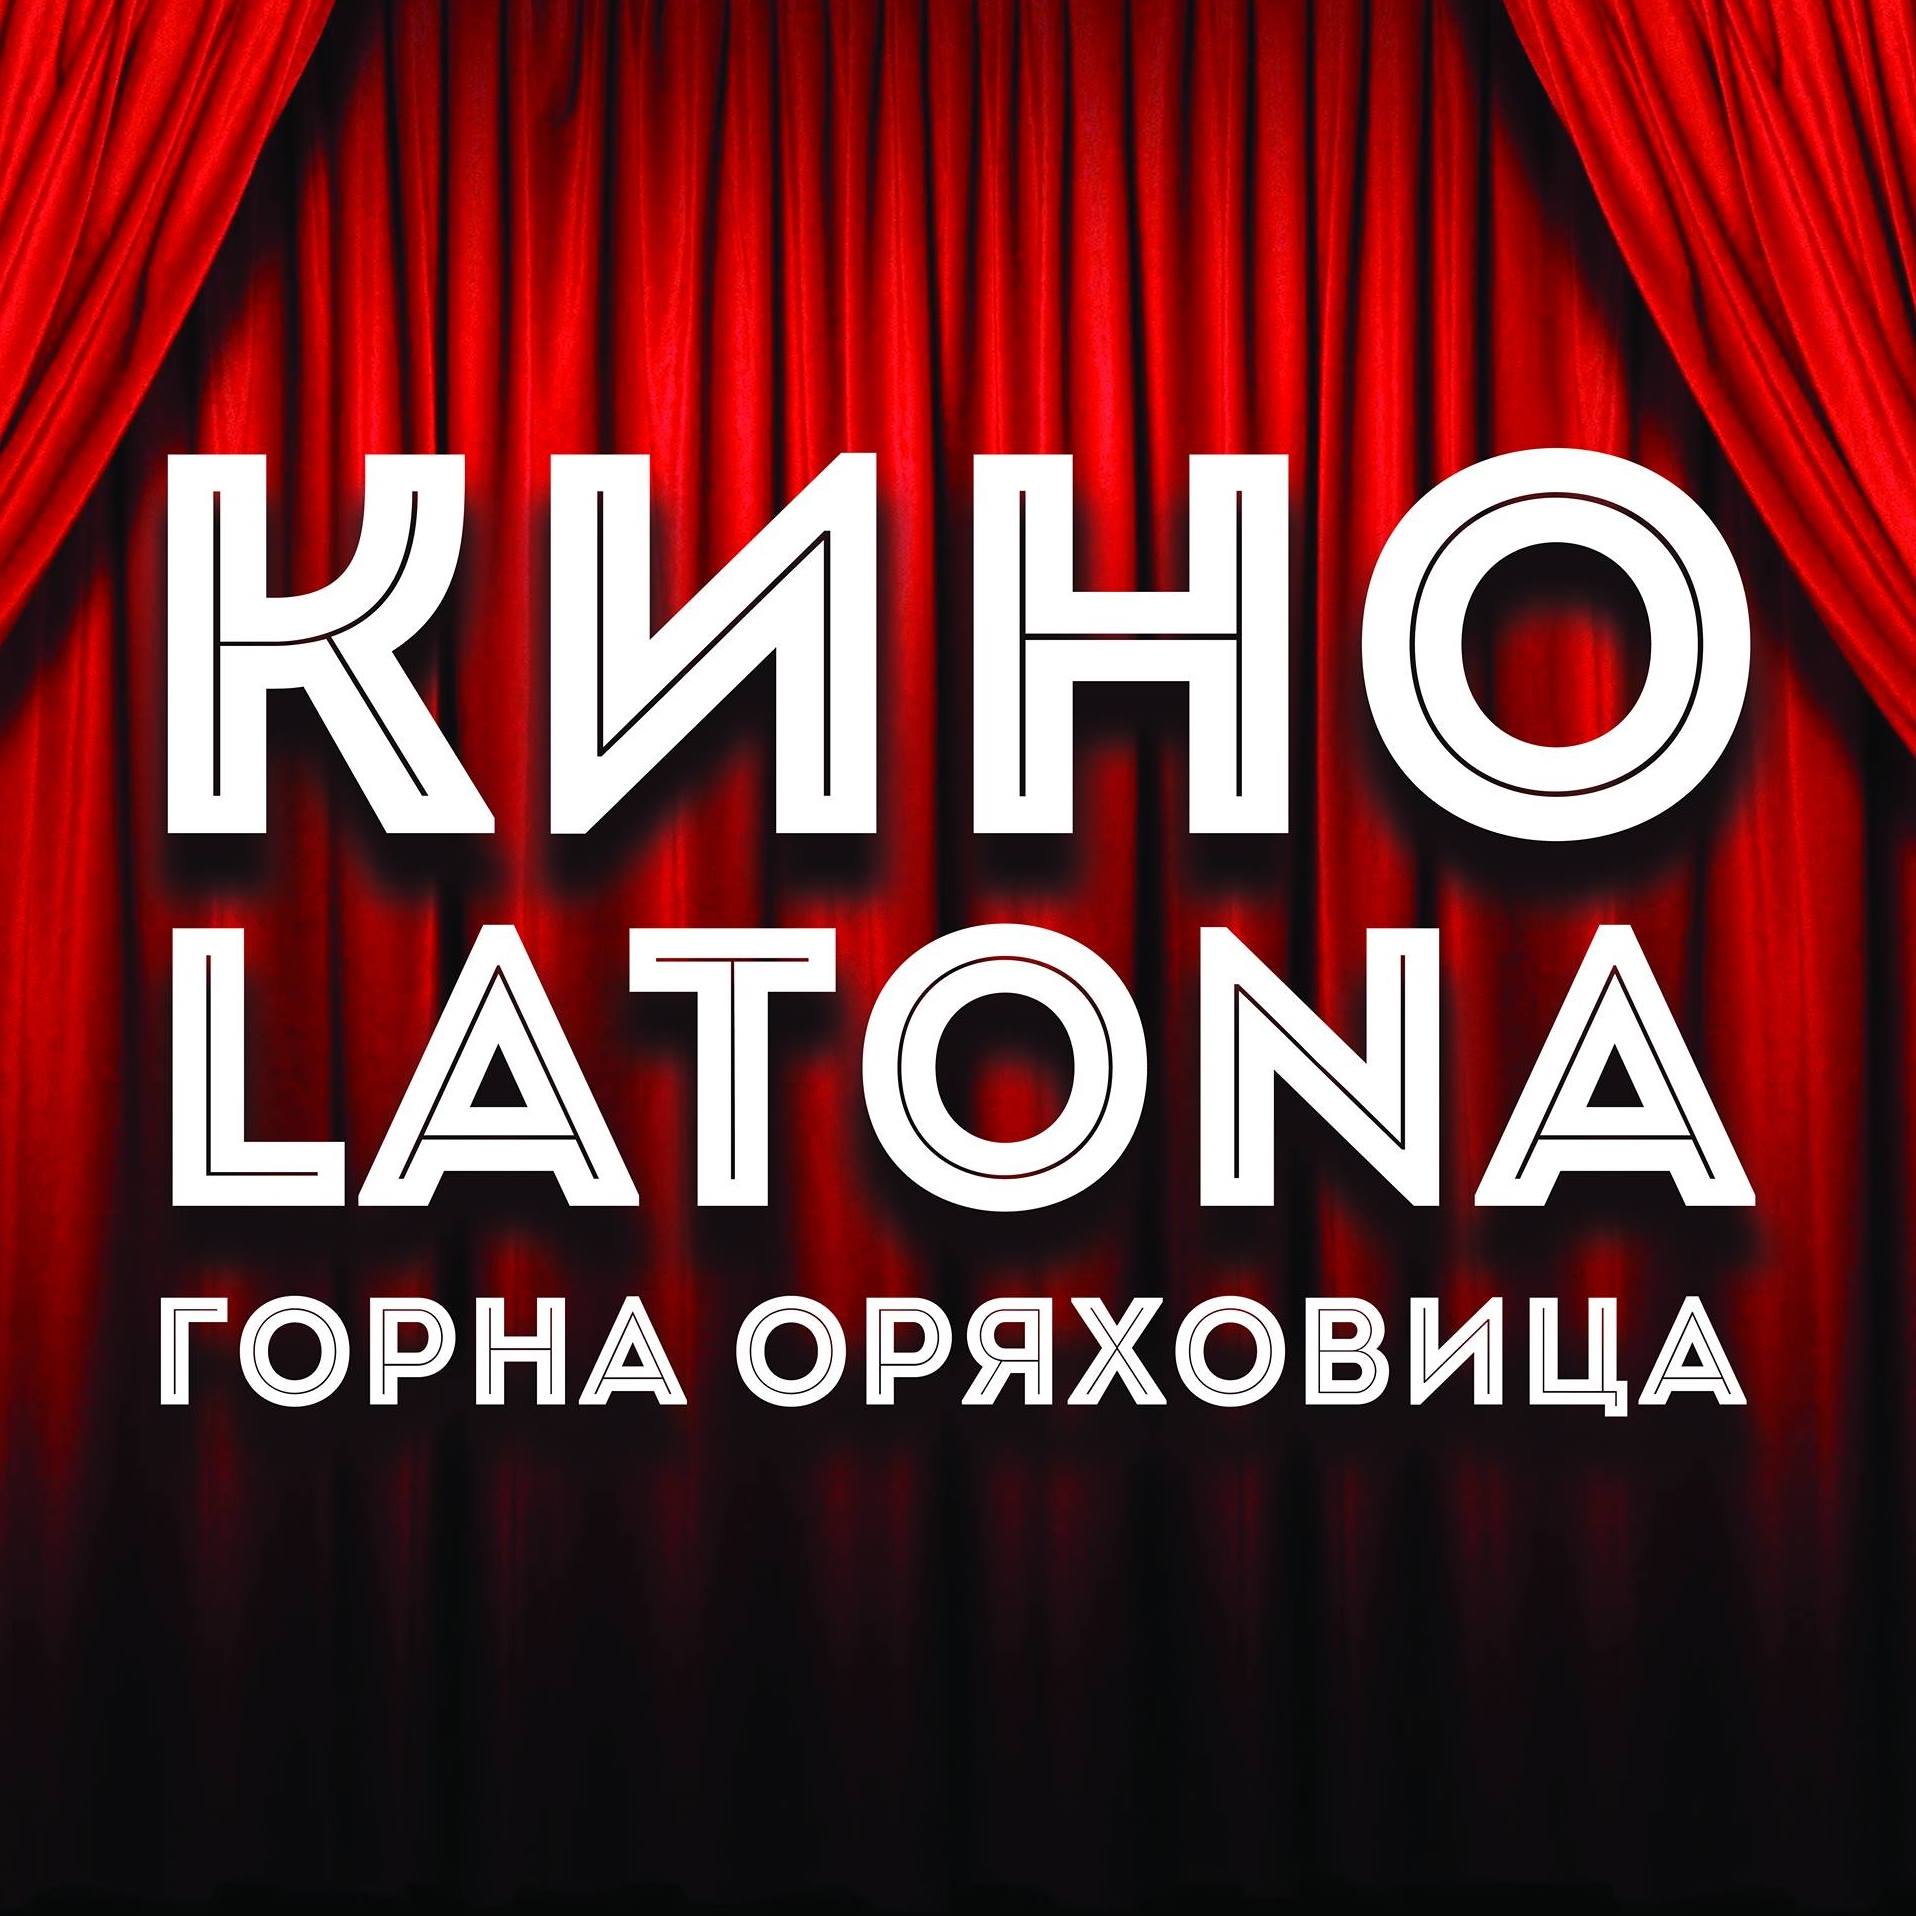 Latona Cinema Горна Оряховица: Кино програма - 29.04-05.05.2022